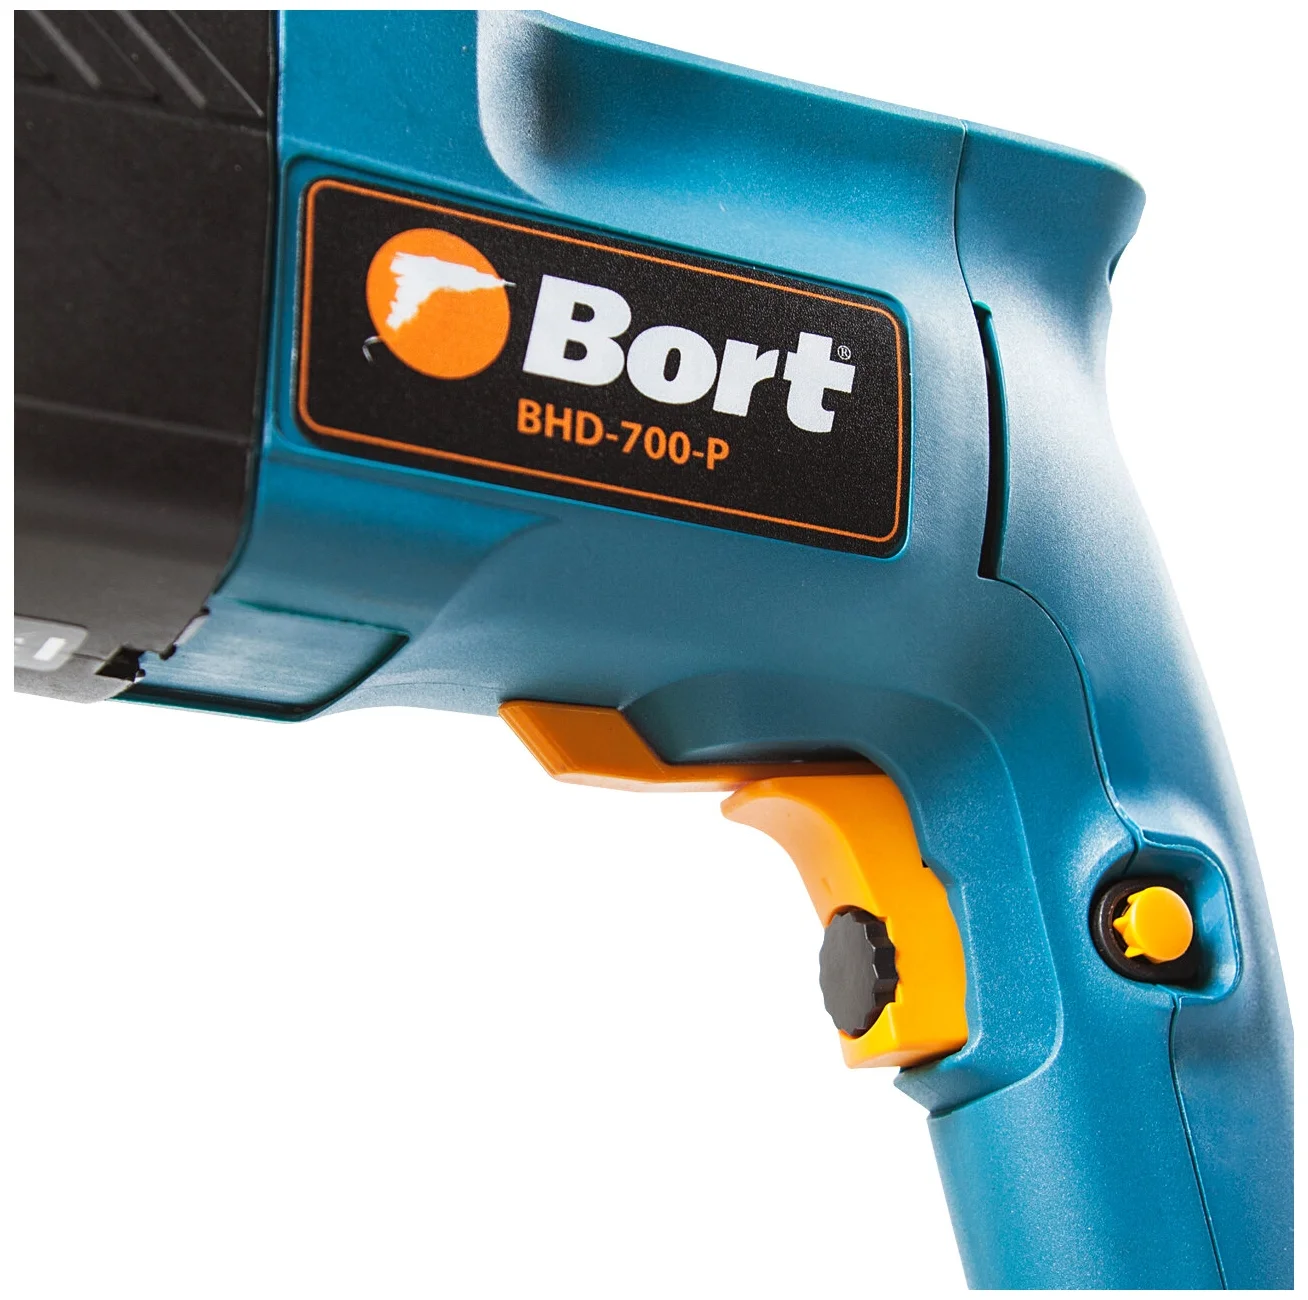 Bort BHD-700-P, 700 Вт - режимы работы: сверление, долбление, сверление с долблением